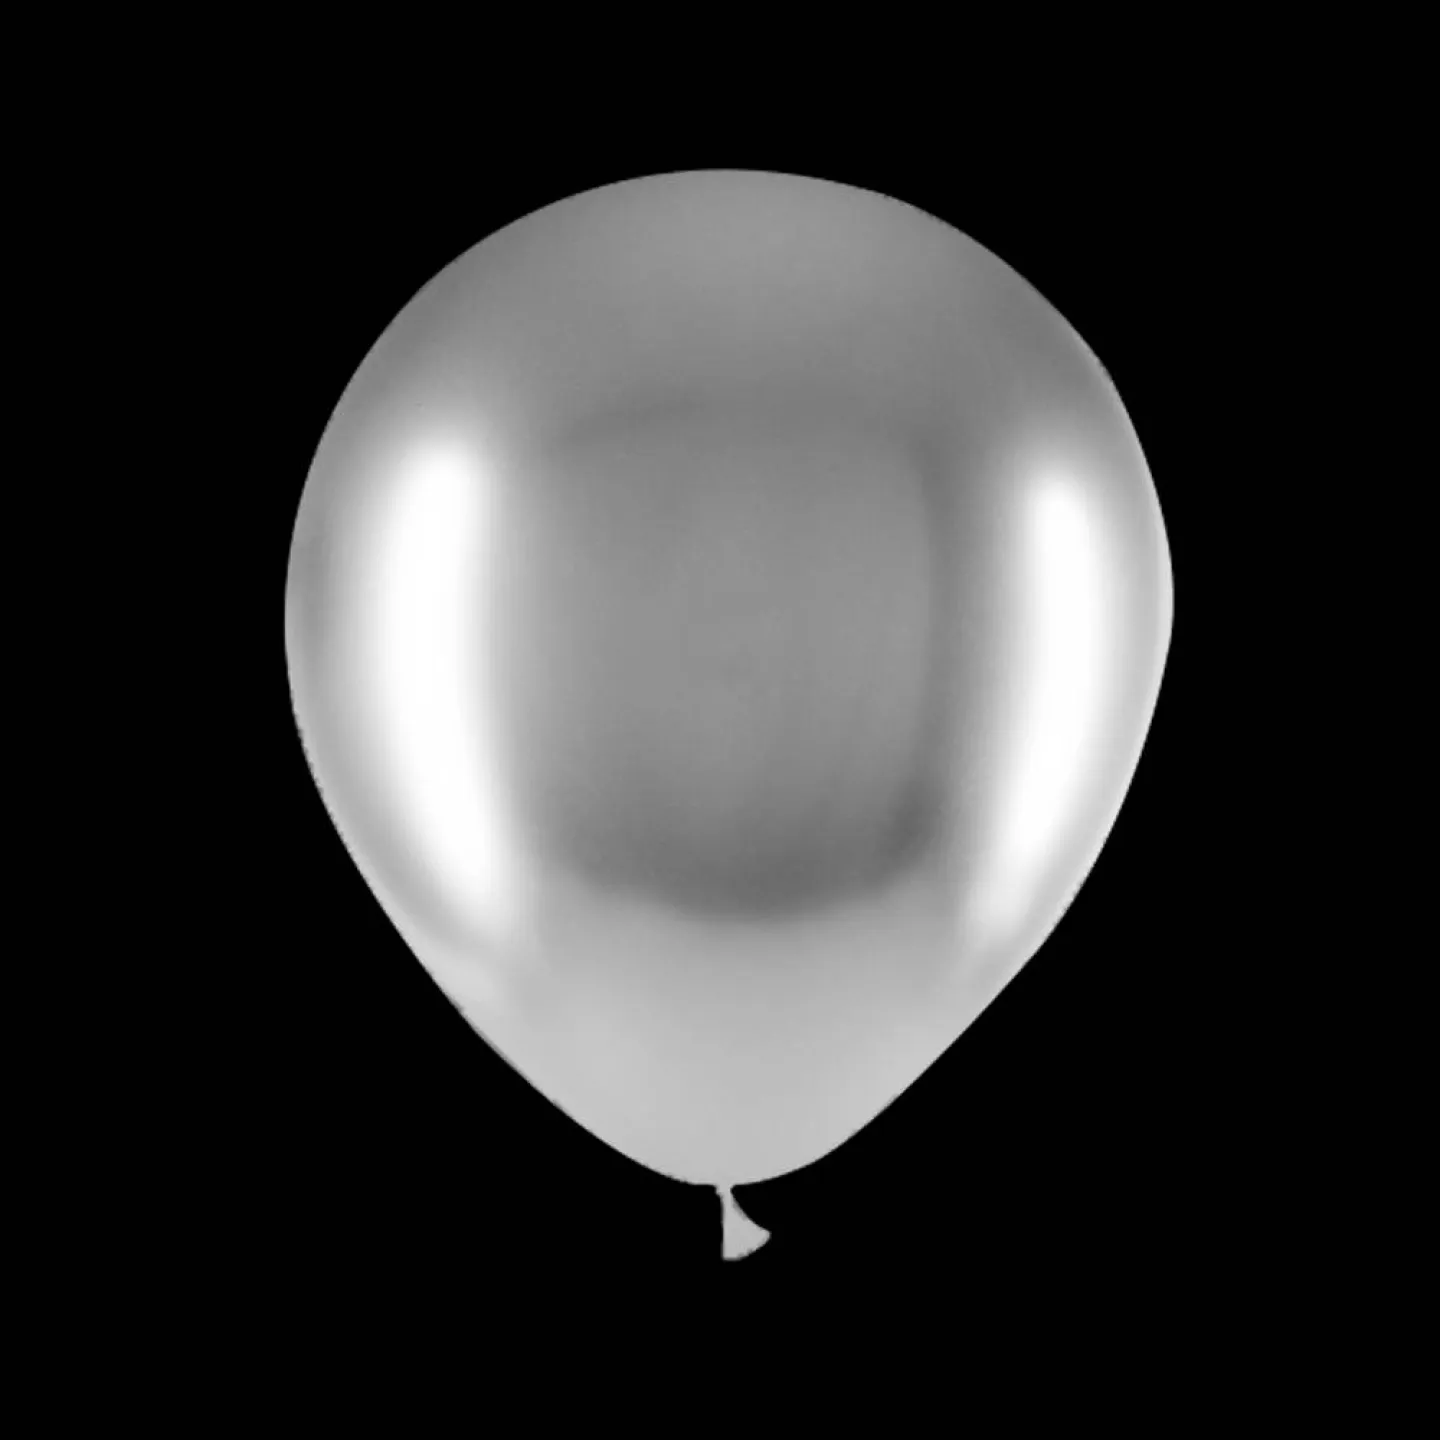 Deco ballonnen - 30cm - Chrome zilver.